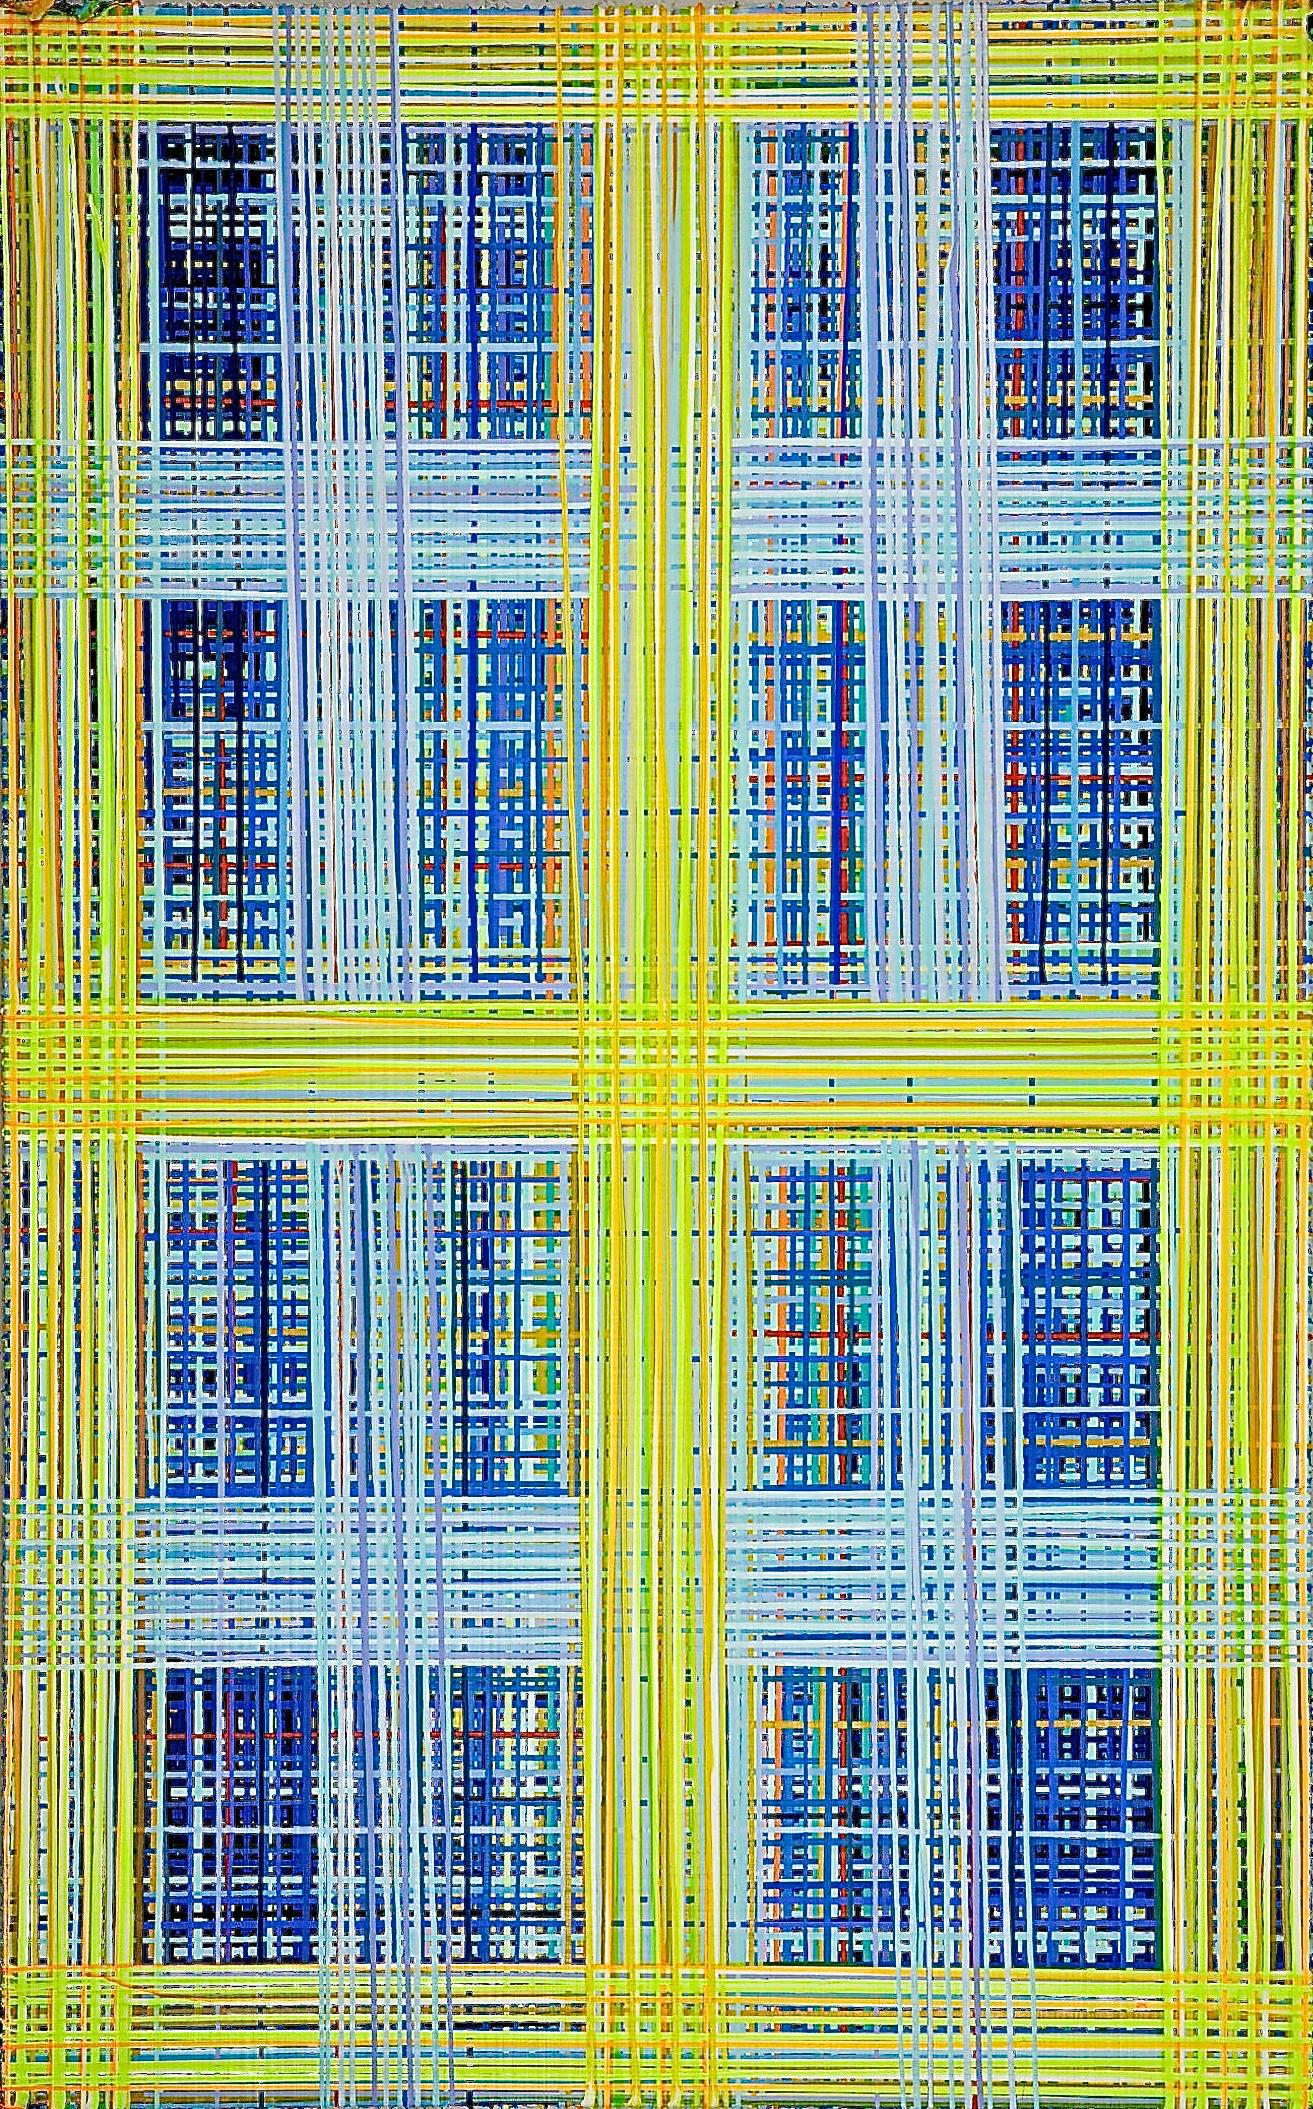 Peinture acrylique abstraite de 60" x 96" de l'artiste Jon James, basé à New York.

Caractérisé par de magnifiques champs de peinture et de couleur, le travail de Jon James utilise une méthode familière, l'égouttement de la peinture, pour créer une